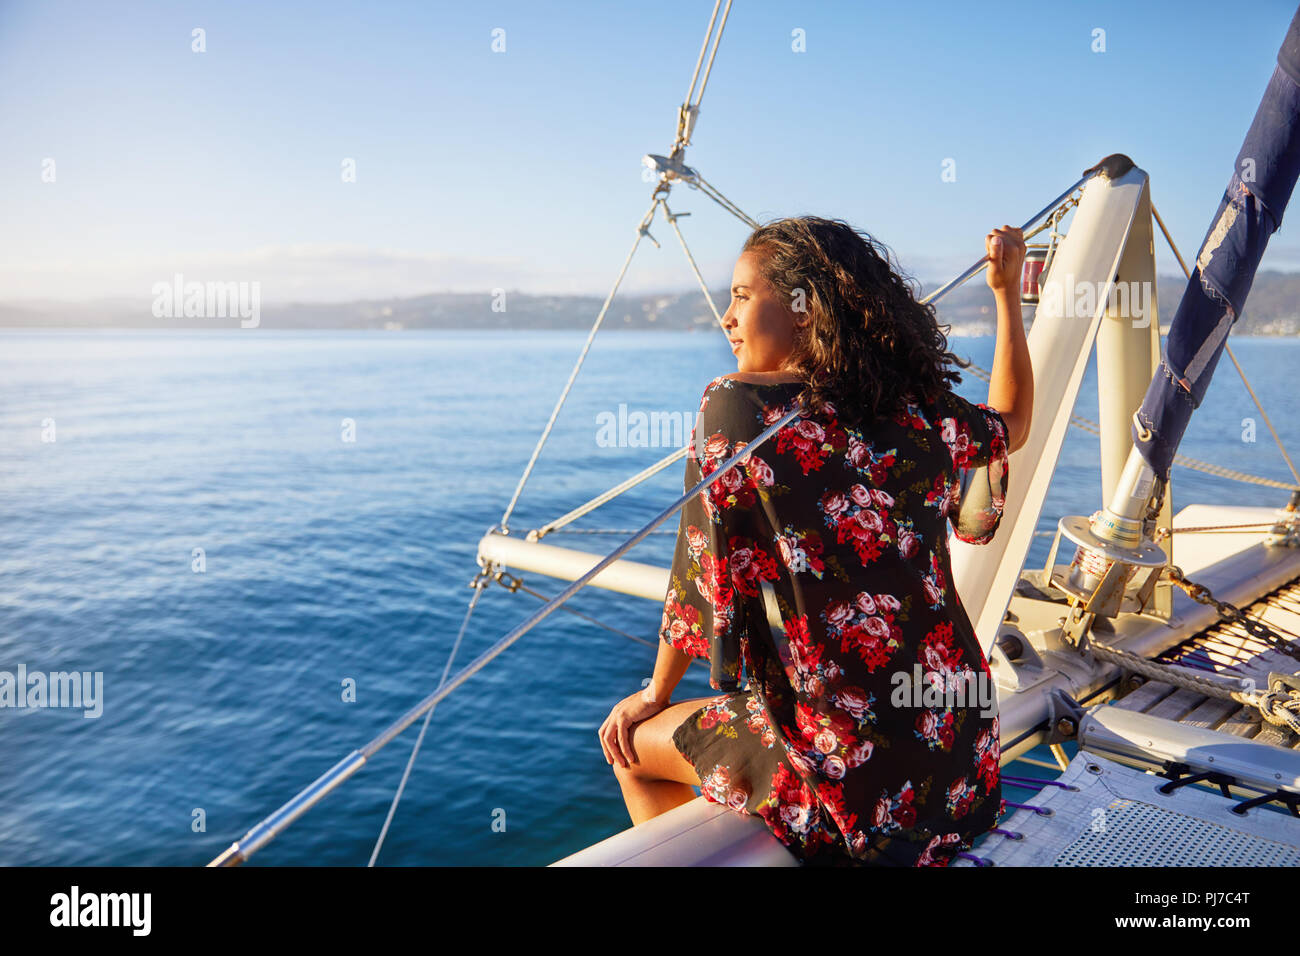 Jeune femme sereine détente sur catamaran, ensoleillée avec vue sur l'océan bleu Banque D'Images